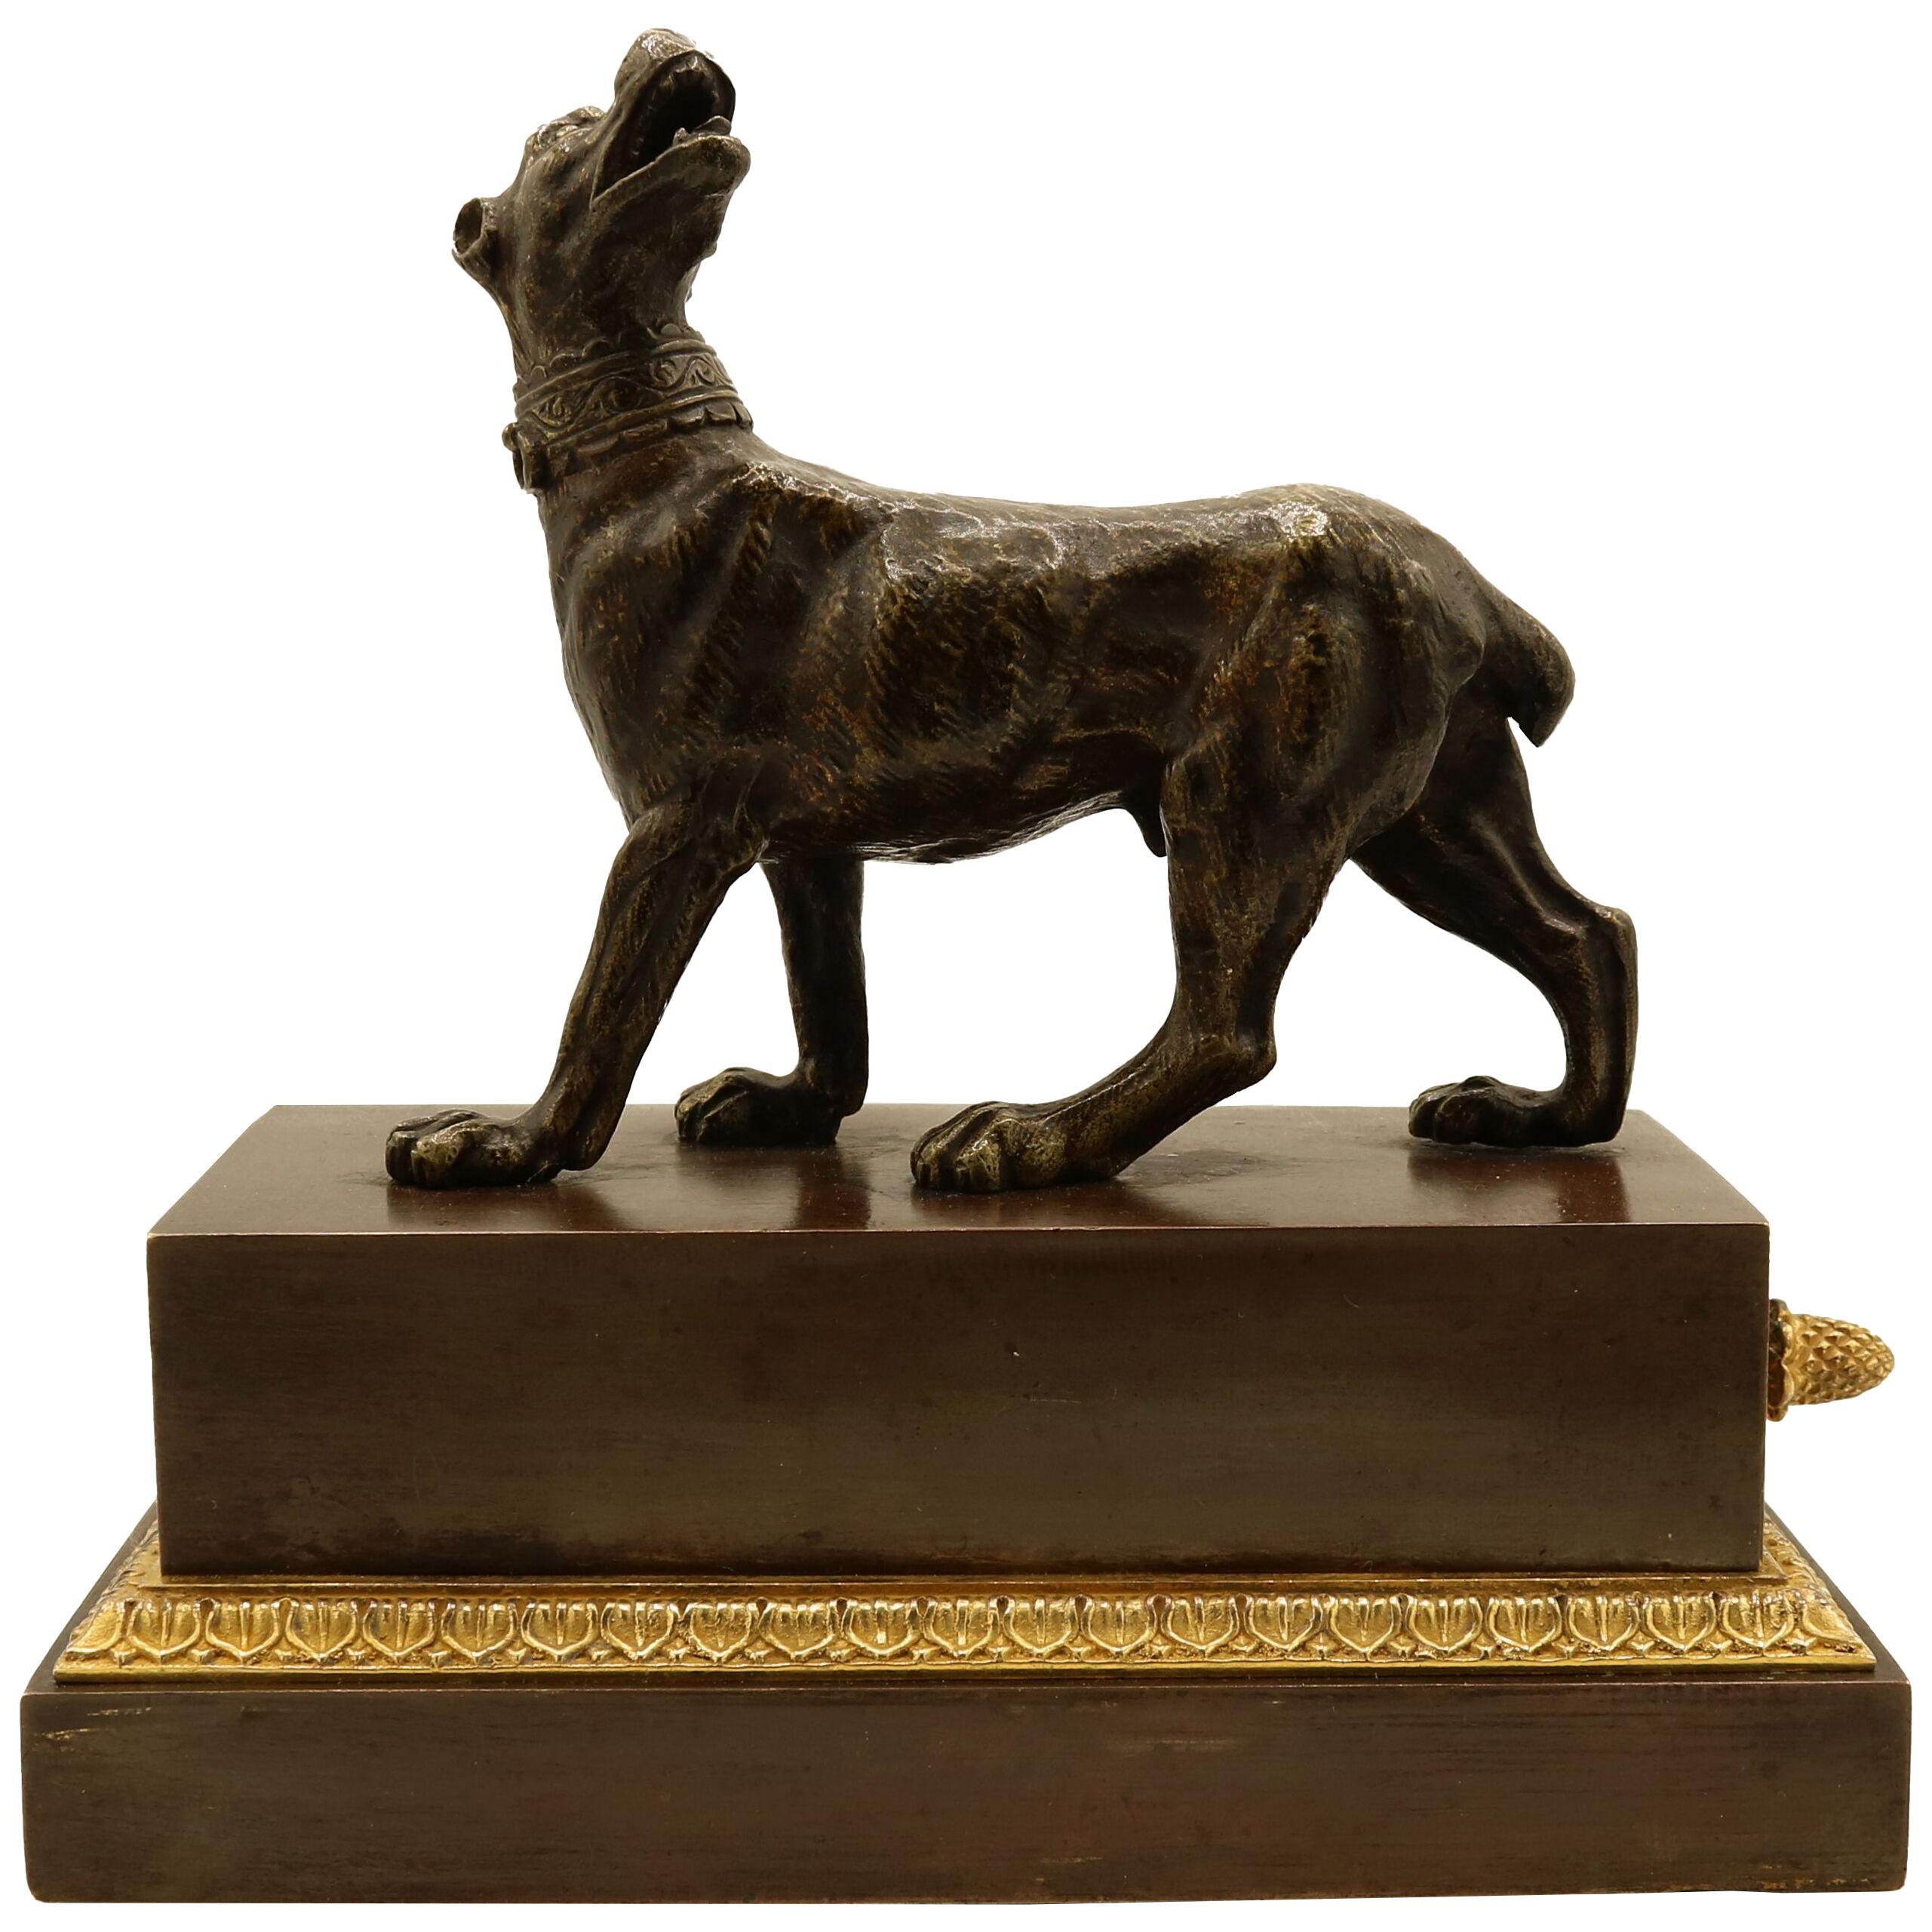 A Well-cast Model of a Bullmastiff Dog